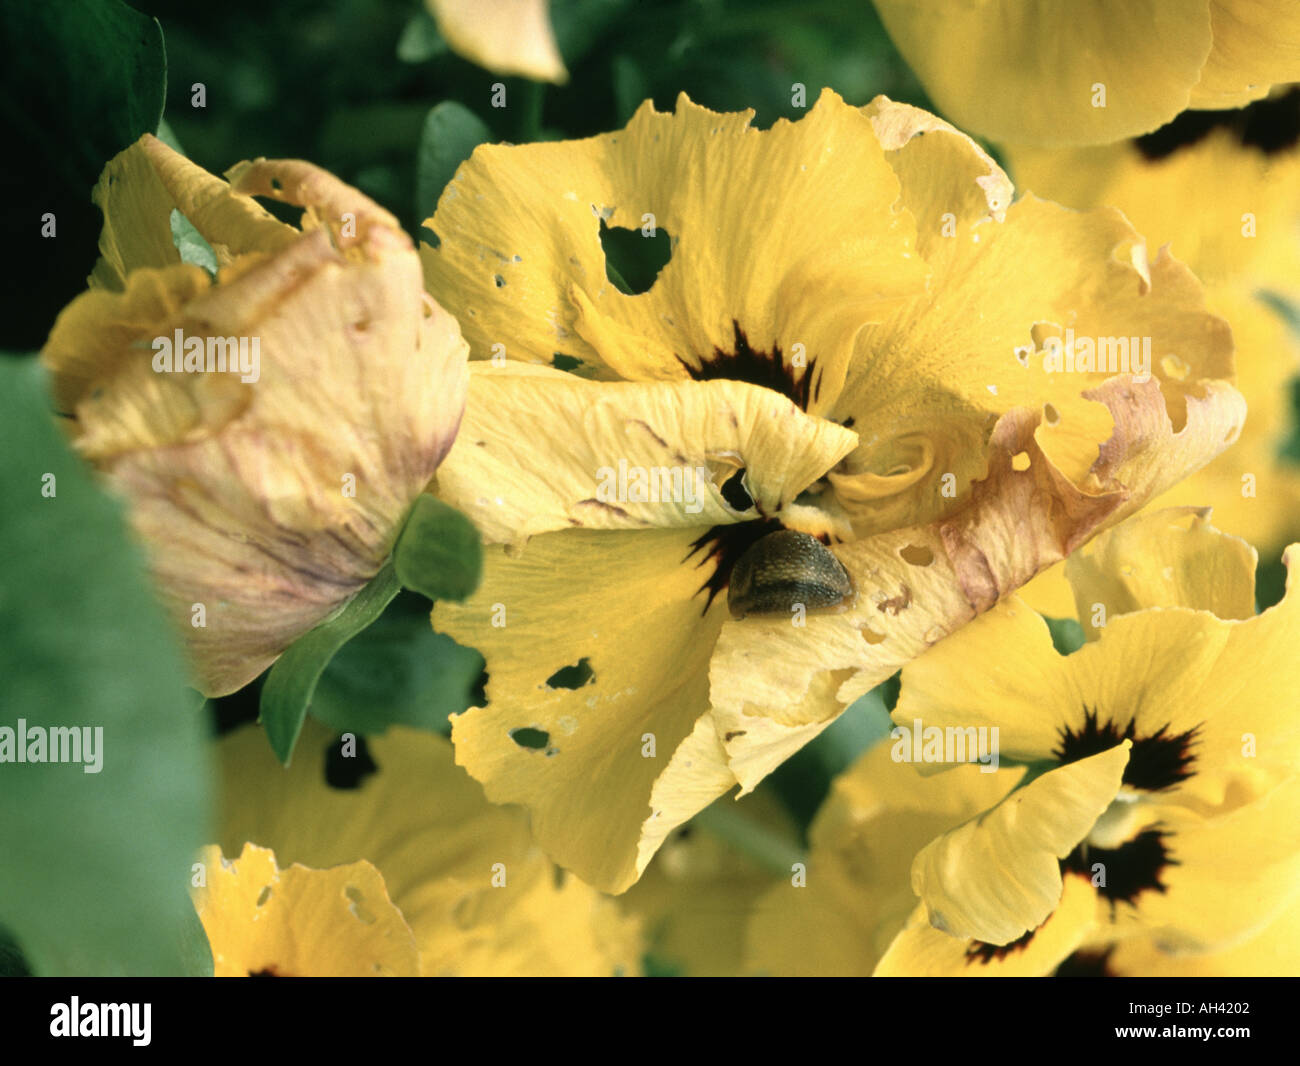 Schwere slug Schäden an winterblüher Stiefmütterchen, Viola sp., Blüte und düsteren Slug Stockfoto